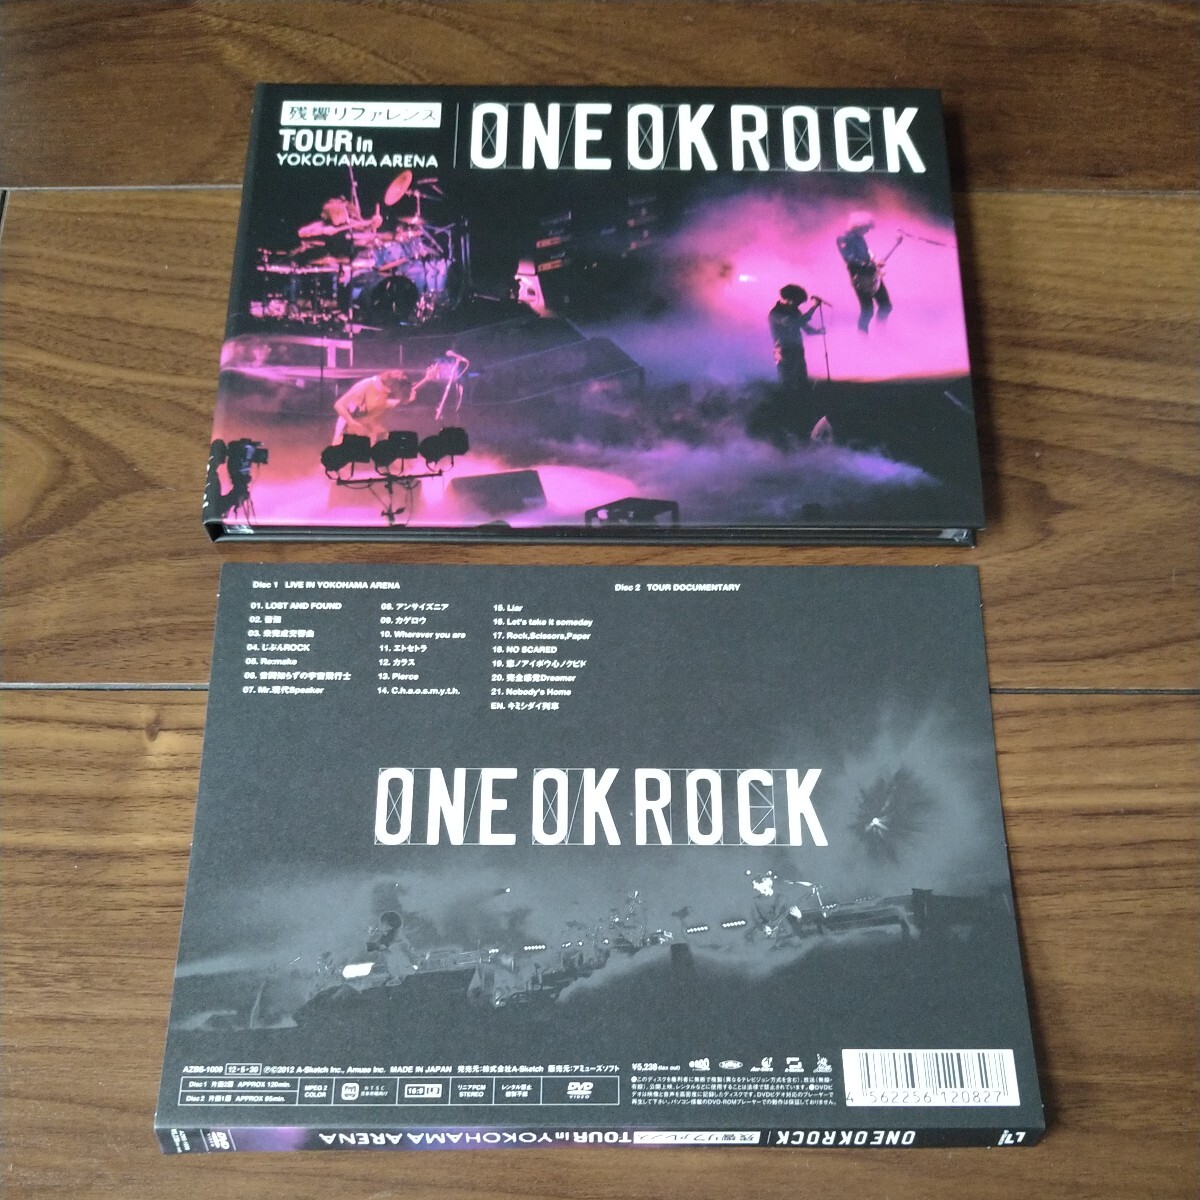 【送料無料】ONE OK ROCK DVD 残響リファレンス TOUR in YOKOHAMA ARENA 2枚組 ワンオクロック/映像作品_画像3